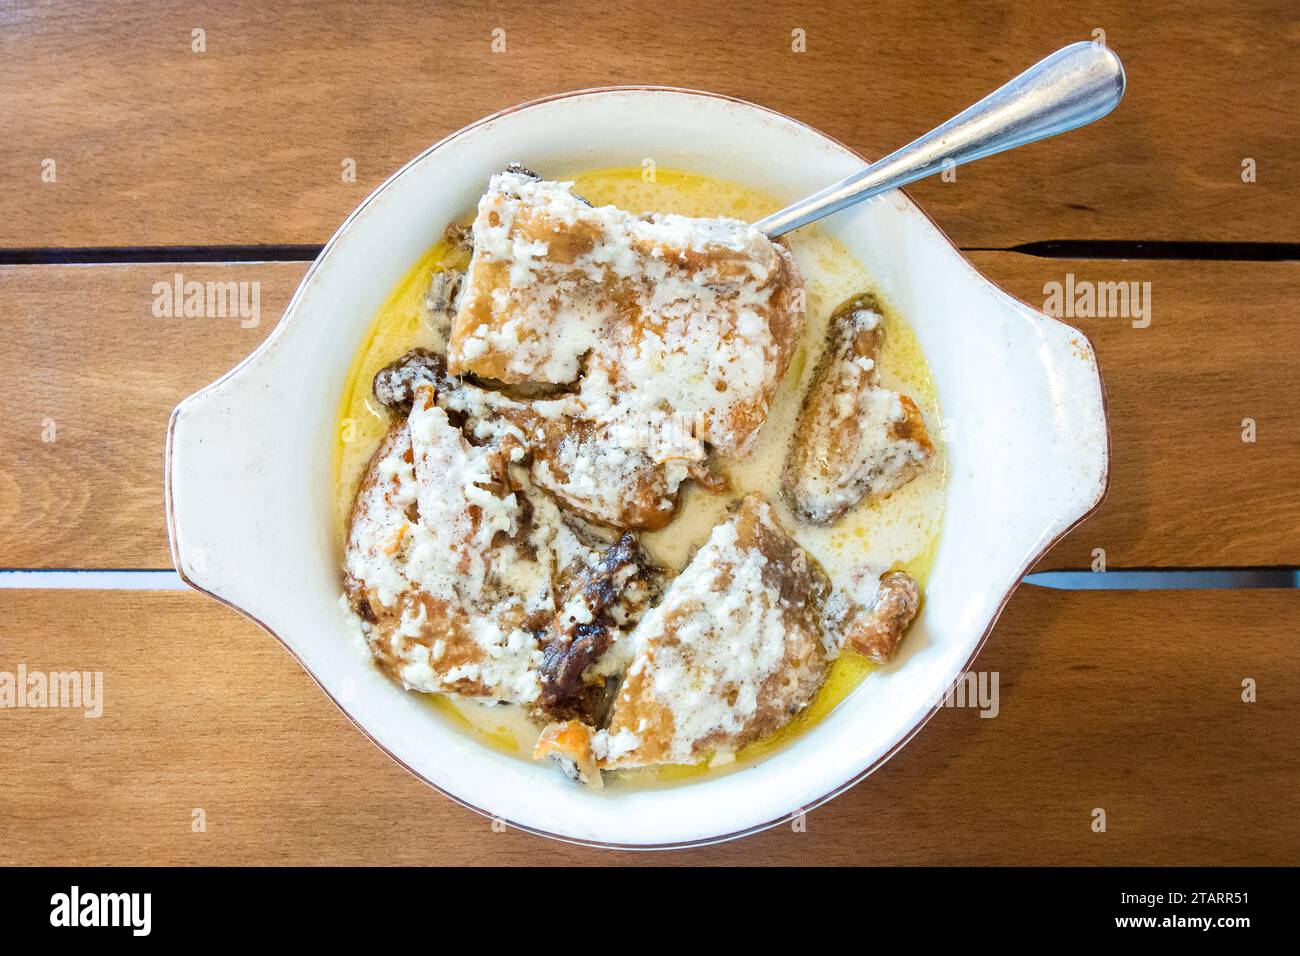 Reisen Sie nach Georgien - Blick von oben auf die Portion Chkmeruli (georgisches Gericht, Hühnchenstücke in cremiger Knoblauchsoße gebraten) in einer Schüssel auf einem Holztisch im lokalen Café Stockfoto